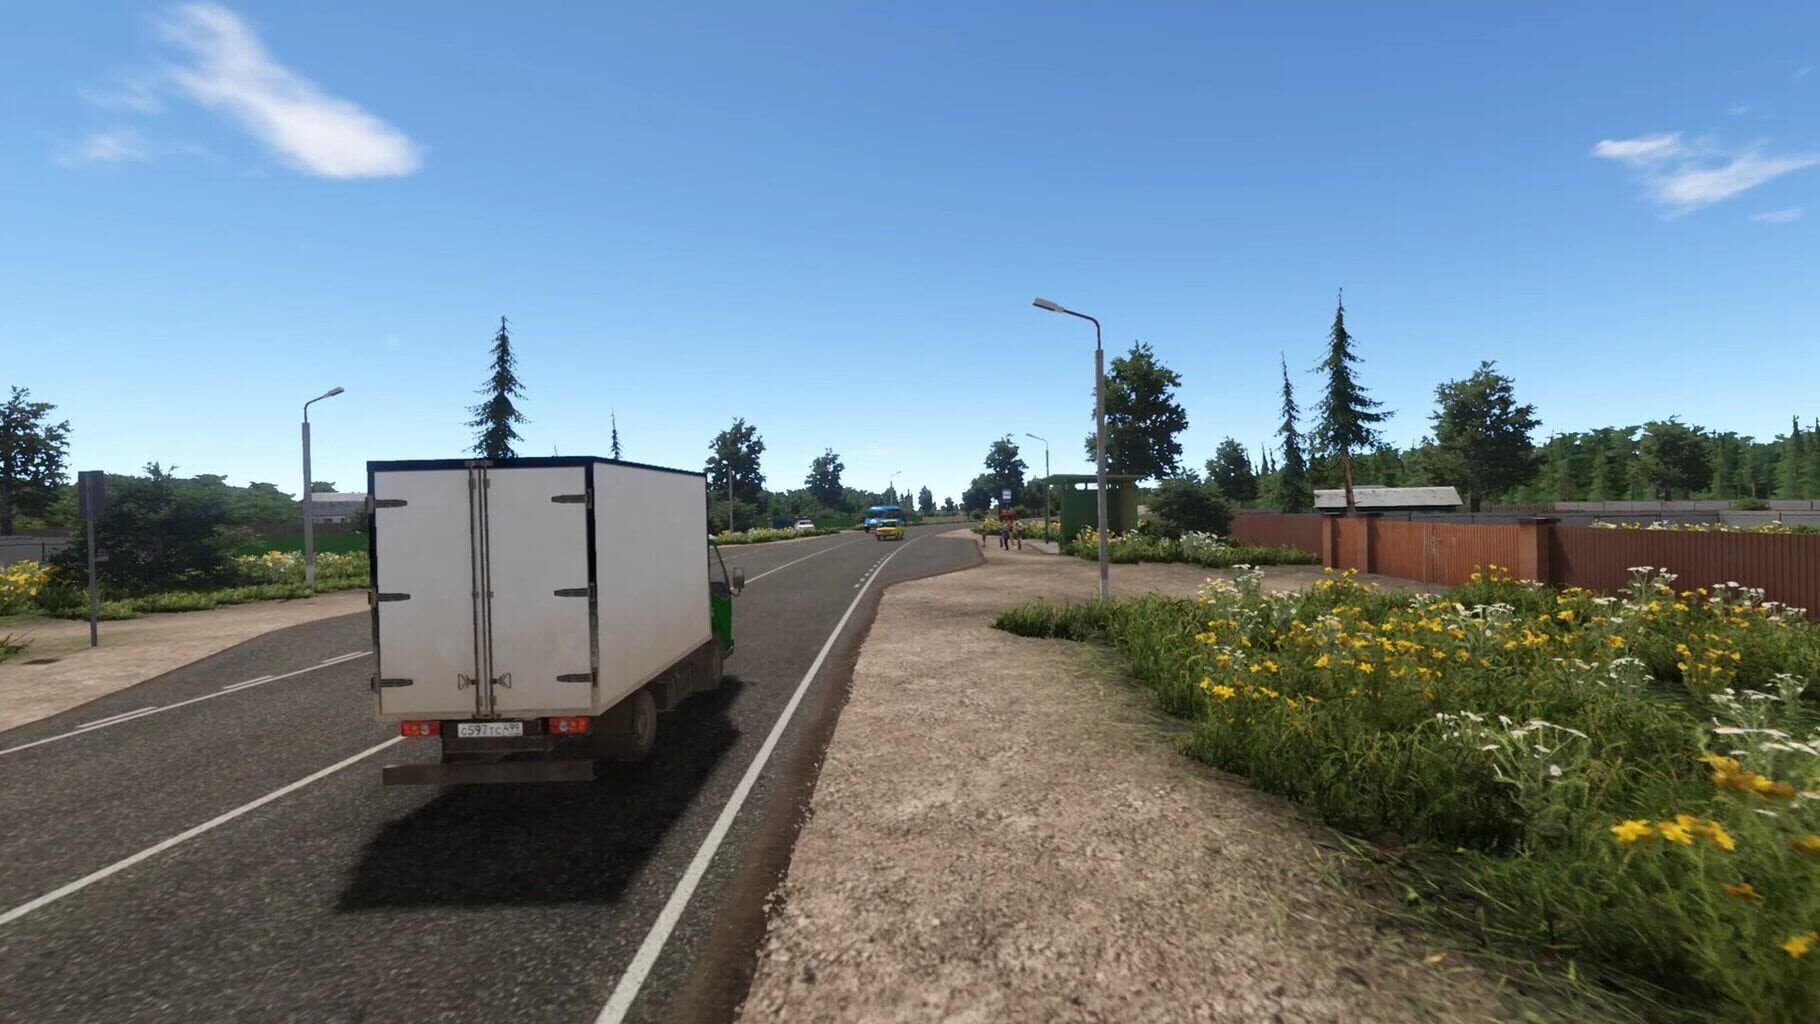 Bus Driver Simulator: Countryside screenshot